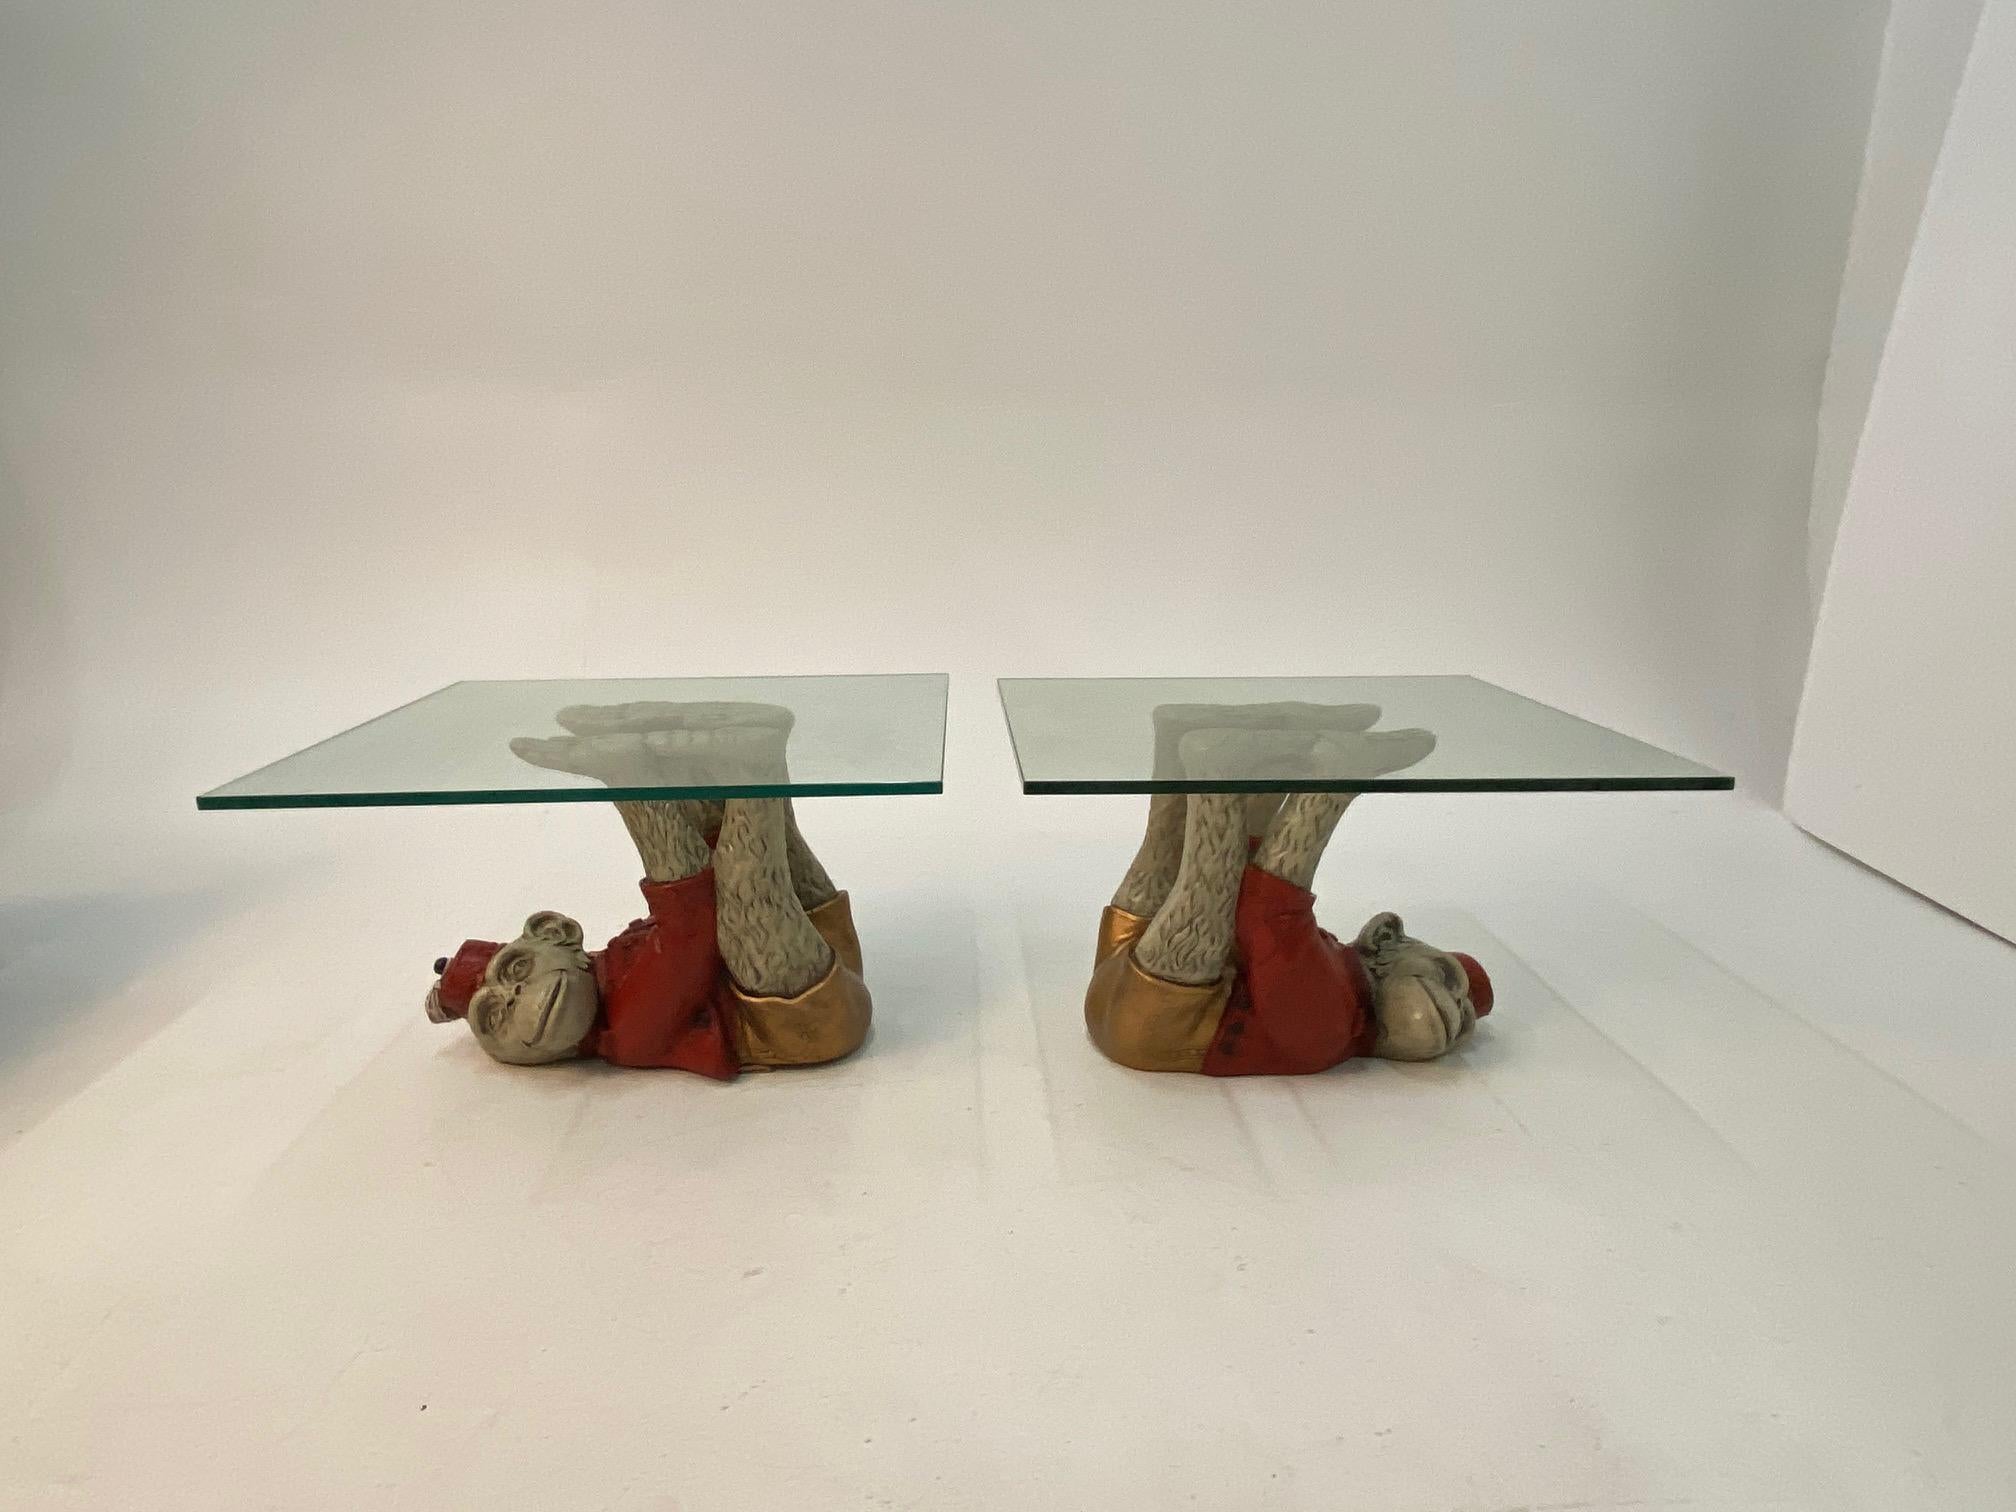 Ein Paar skurriler Vintage-Tische mit Affenmotiven, die aus Gips gegossene, bemalte Affen in roten Pagenkostümen zeigen, die in fantastischen akrobatischen Positionen auf dem Rücken liegen, mit verlängerten Armen und Beinen, die Glastischplatten